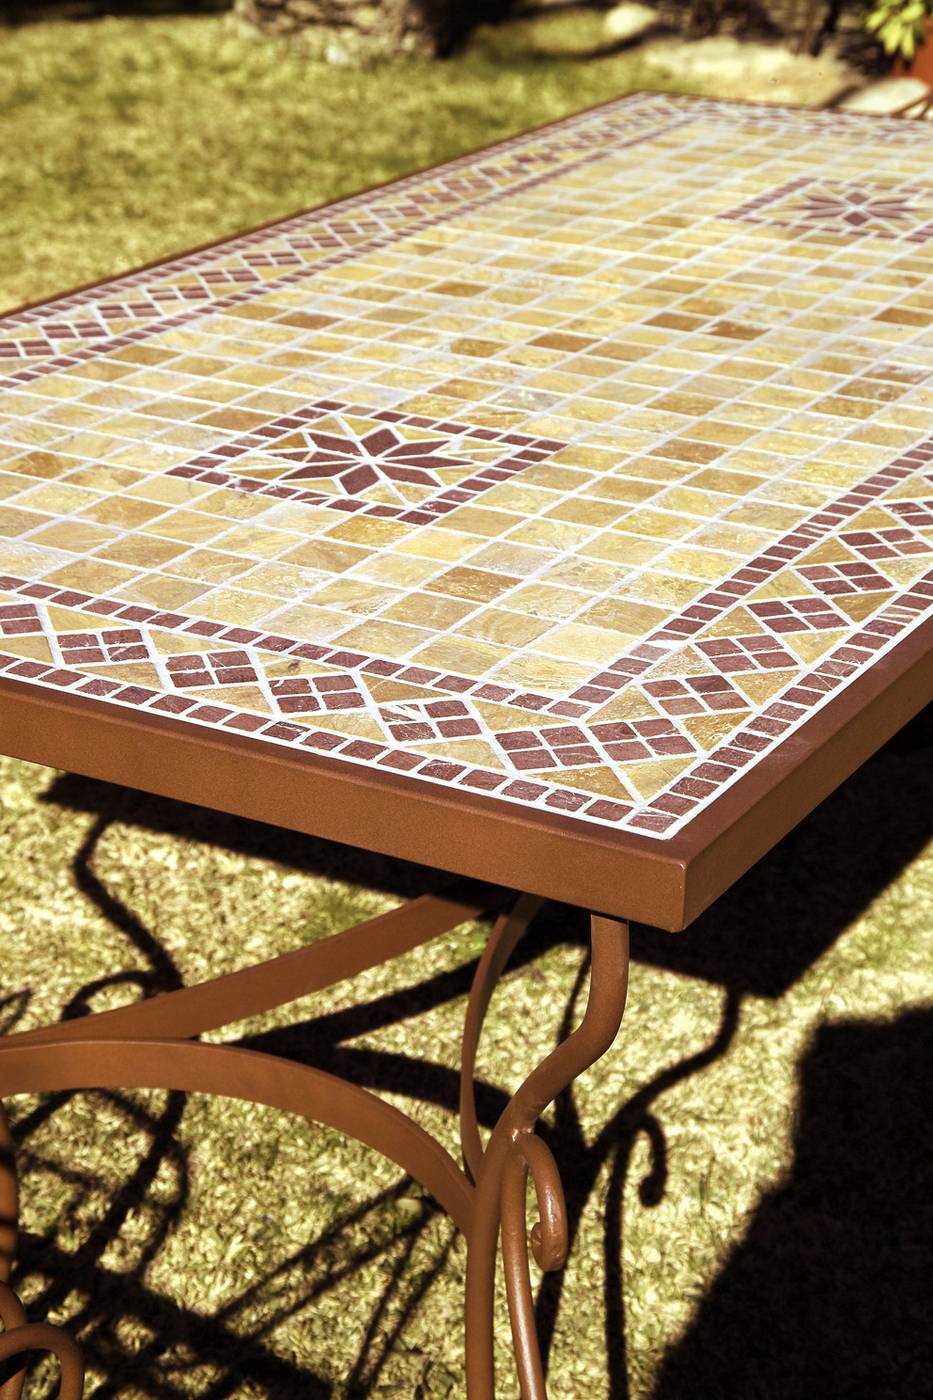 Mesa forja Marbella - Mesa cuadrada o rectangular de forja con tapa de mosaico, cerámica, werzalit o cristal, disponible en varias medidas y acabados